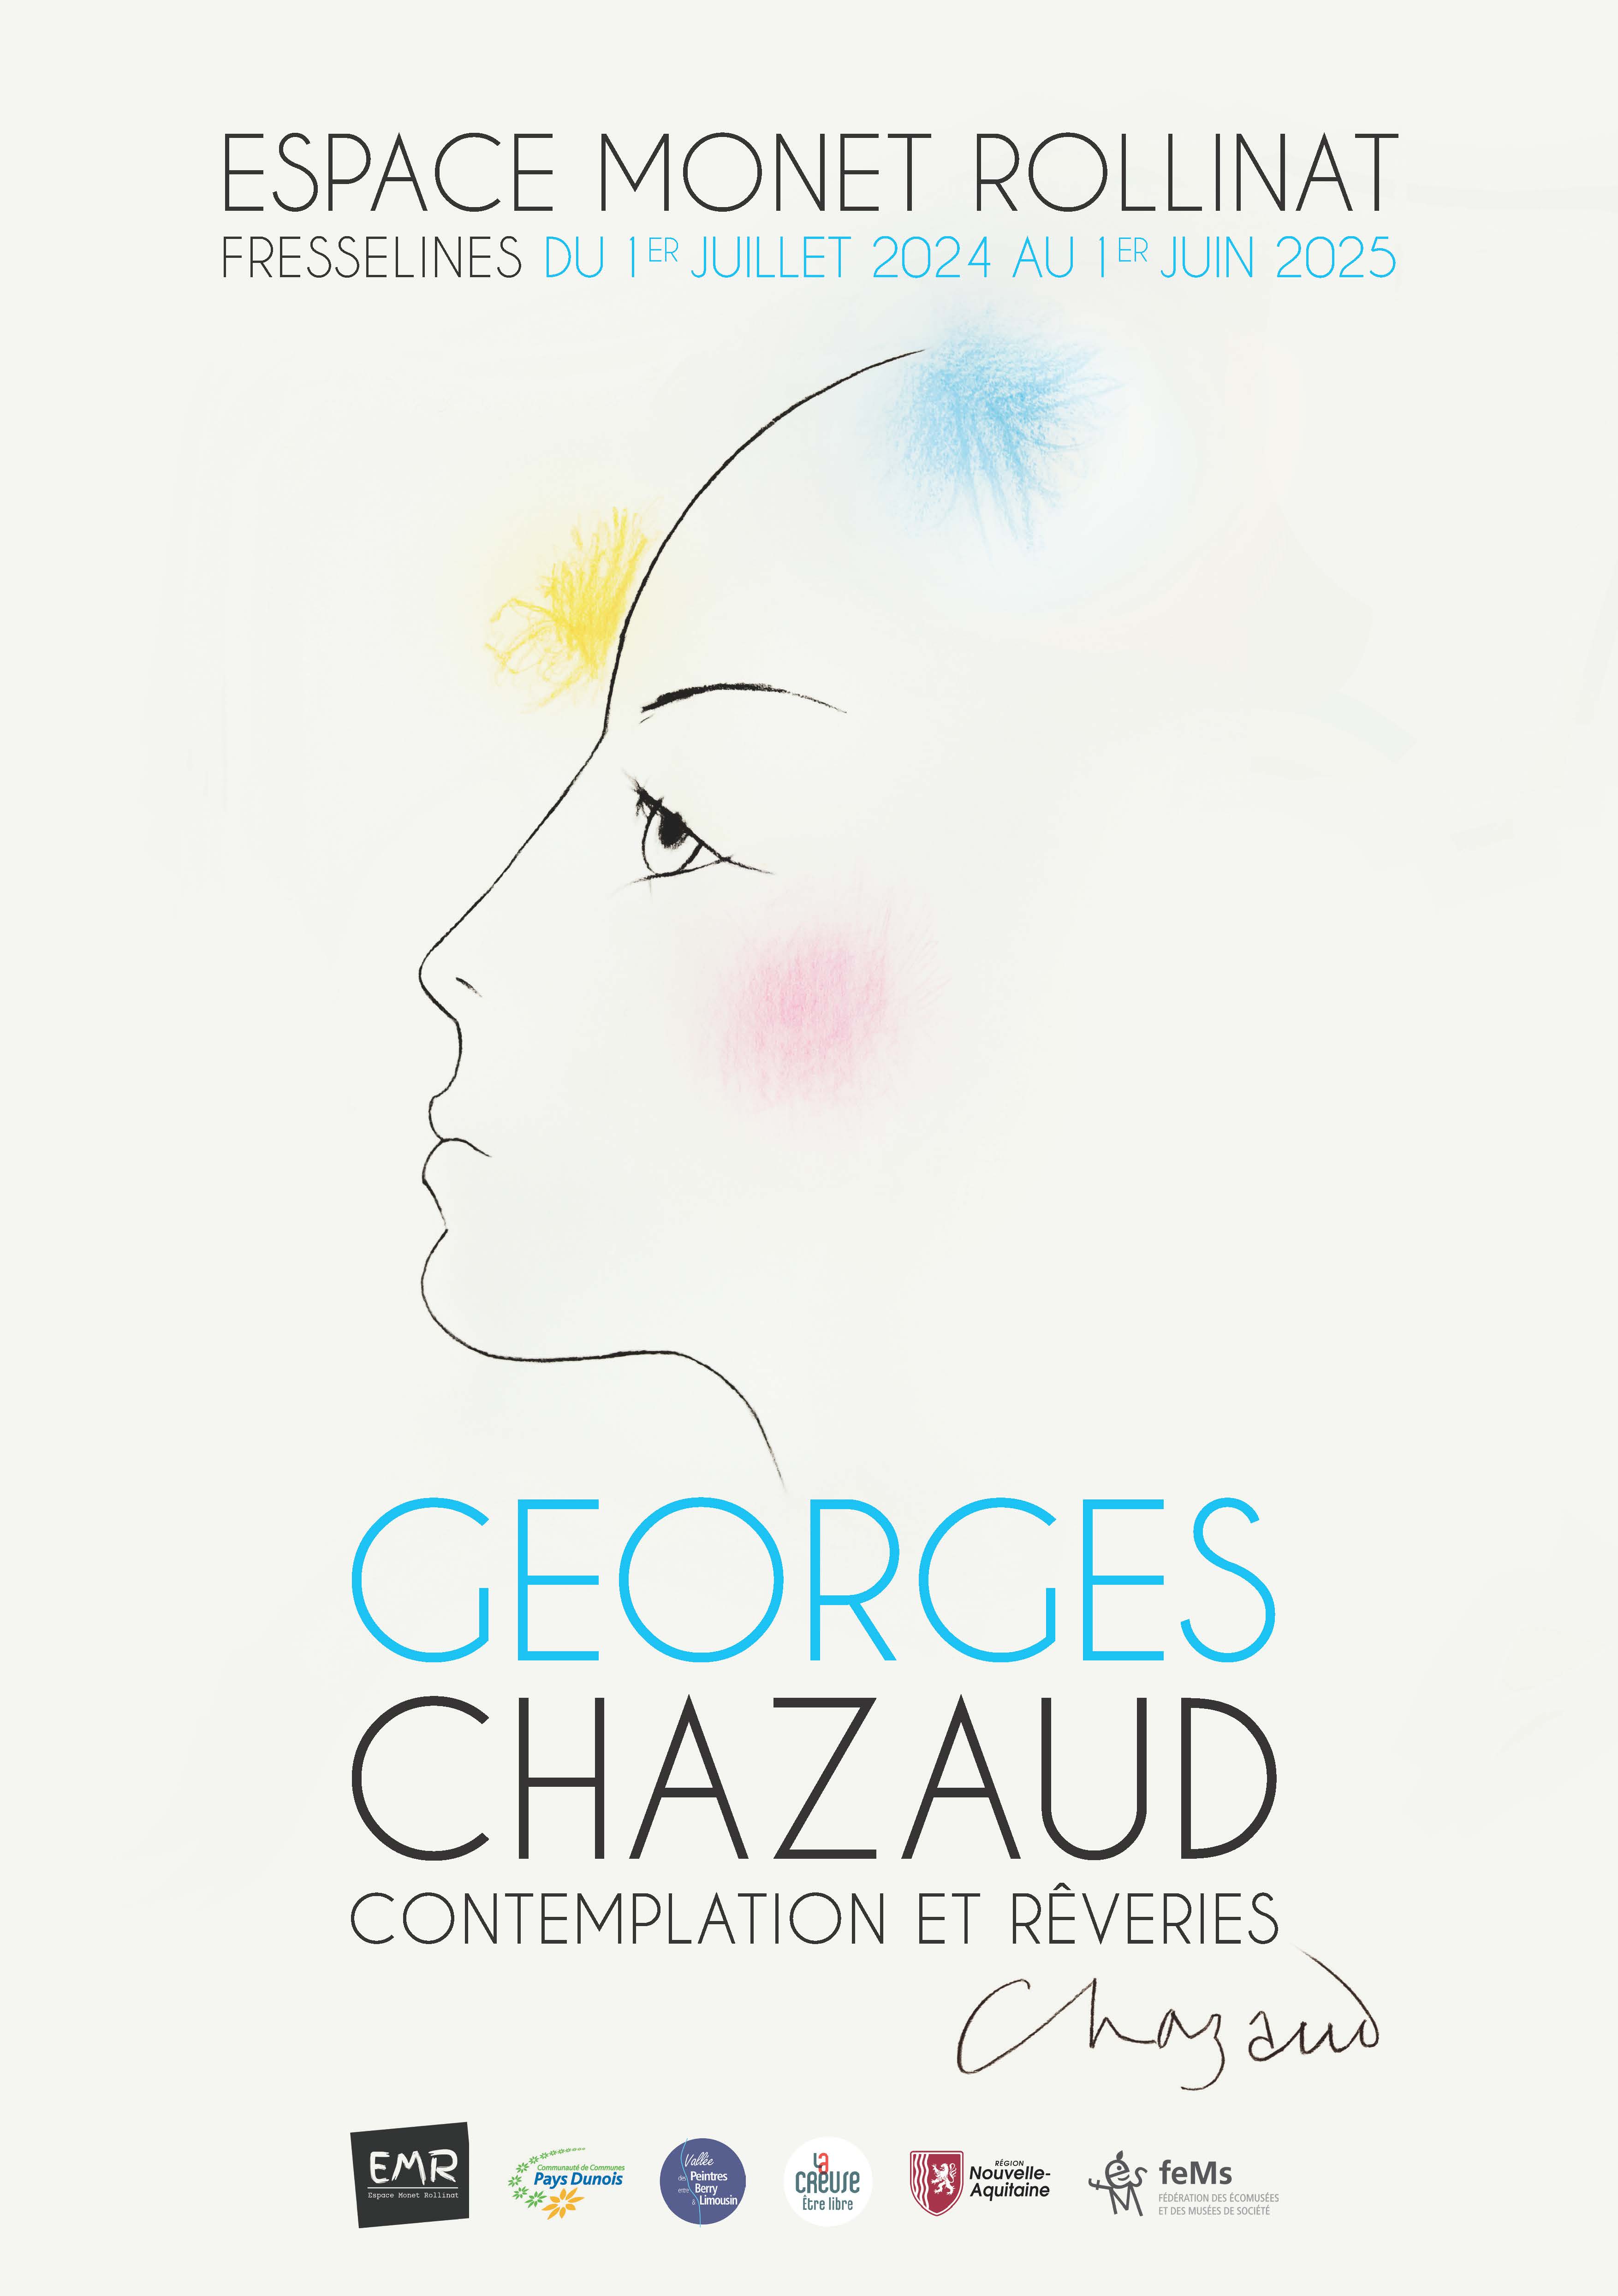 Exposition Georges Chazaud "Contemplation et rêveries" Du 1 juil au 11 nov 2024